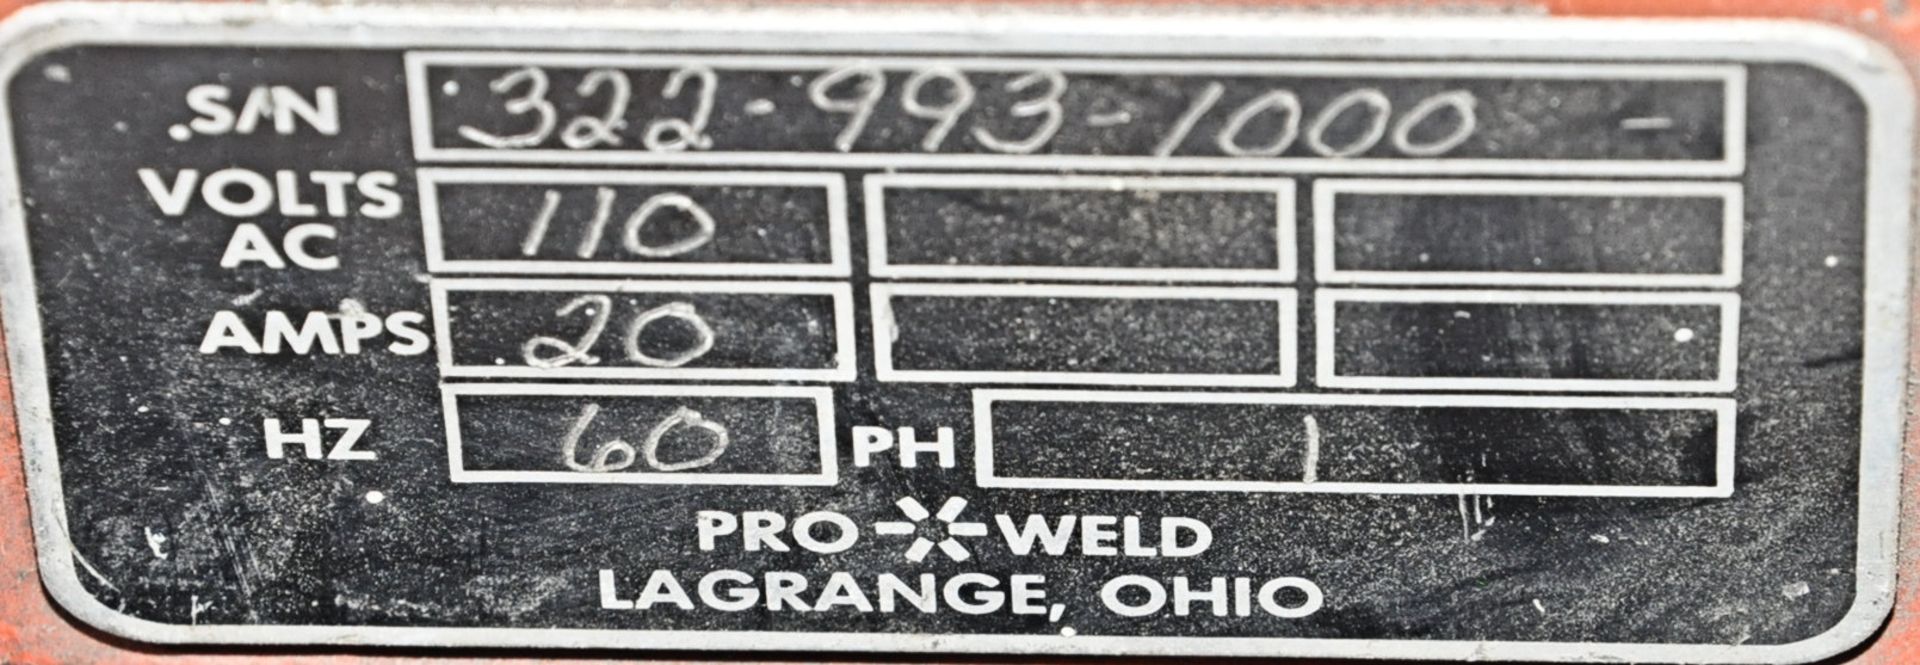 Pro-Weld Model CD-312 Stud/Pin Welder, (Welder Only) - Image 2 of 2